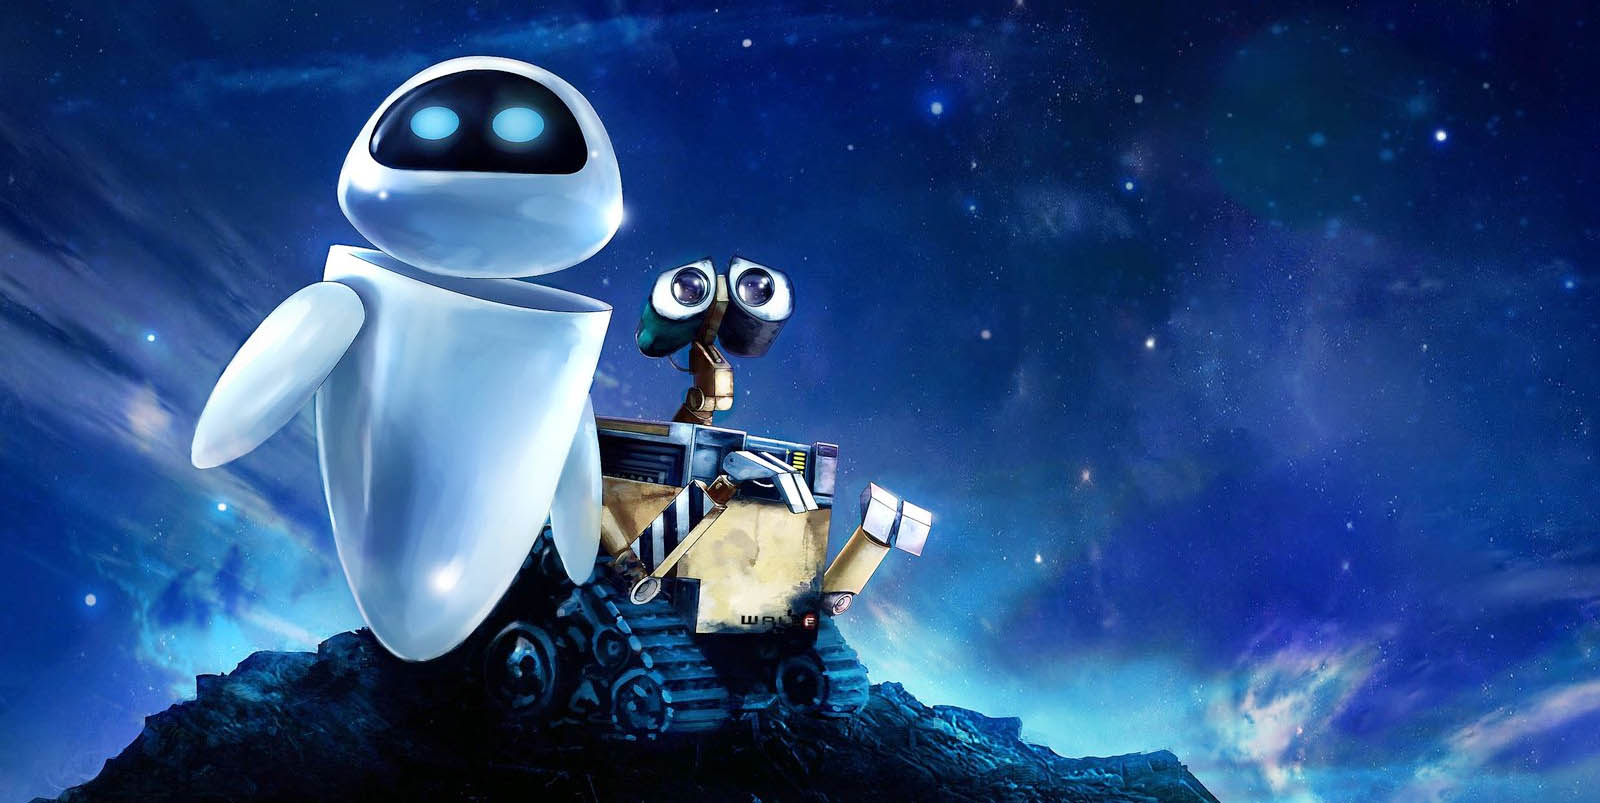 Conheça os 5 filmes mais aclamados da Pixar de acordo com as notas do Metacritic 5